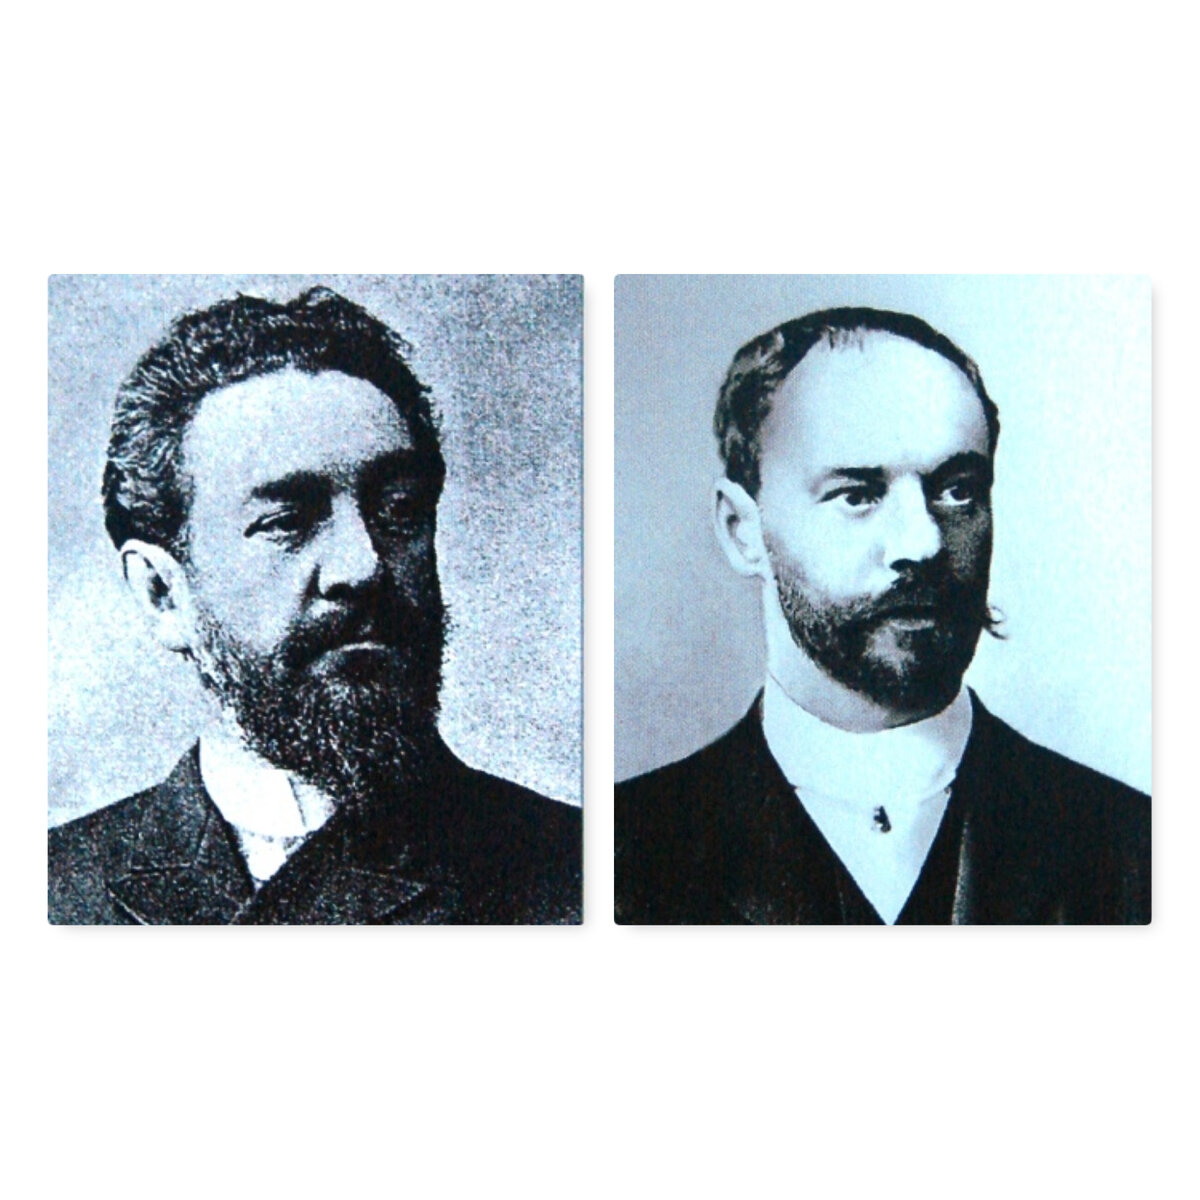 Йоханнес Кох и Вильгельм Бокслаф, создатели особняка. LNB